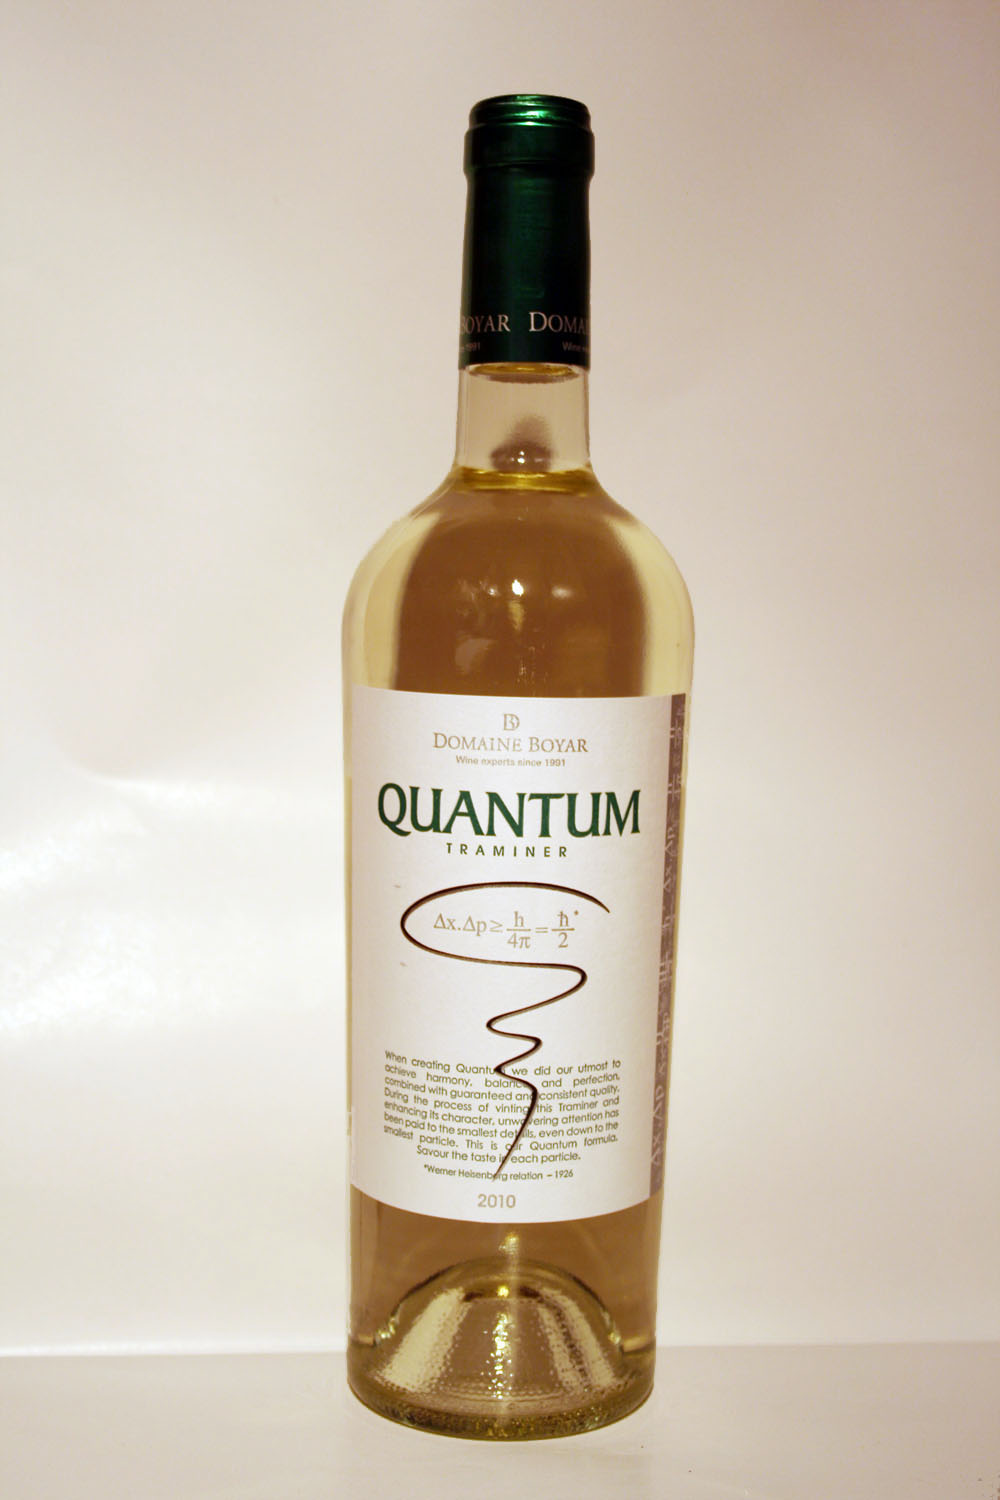 Quantum Traminer 2010